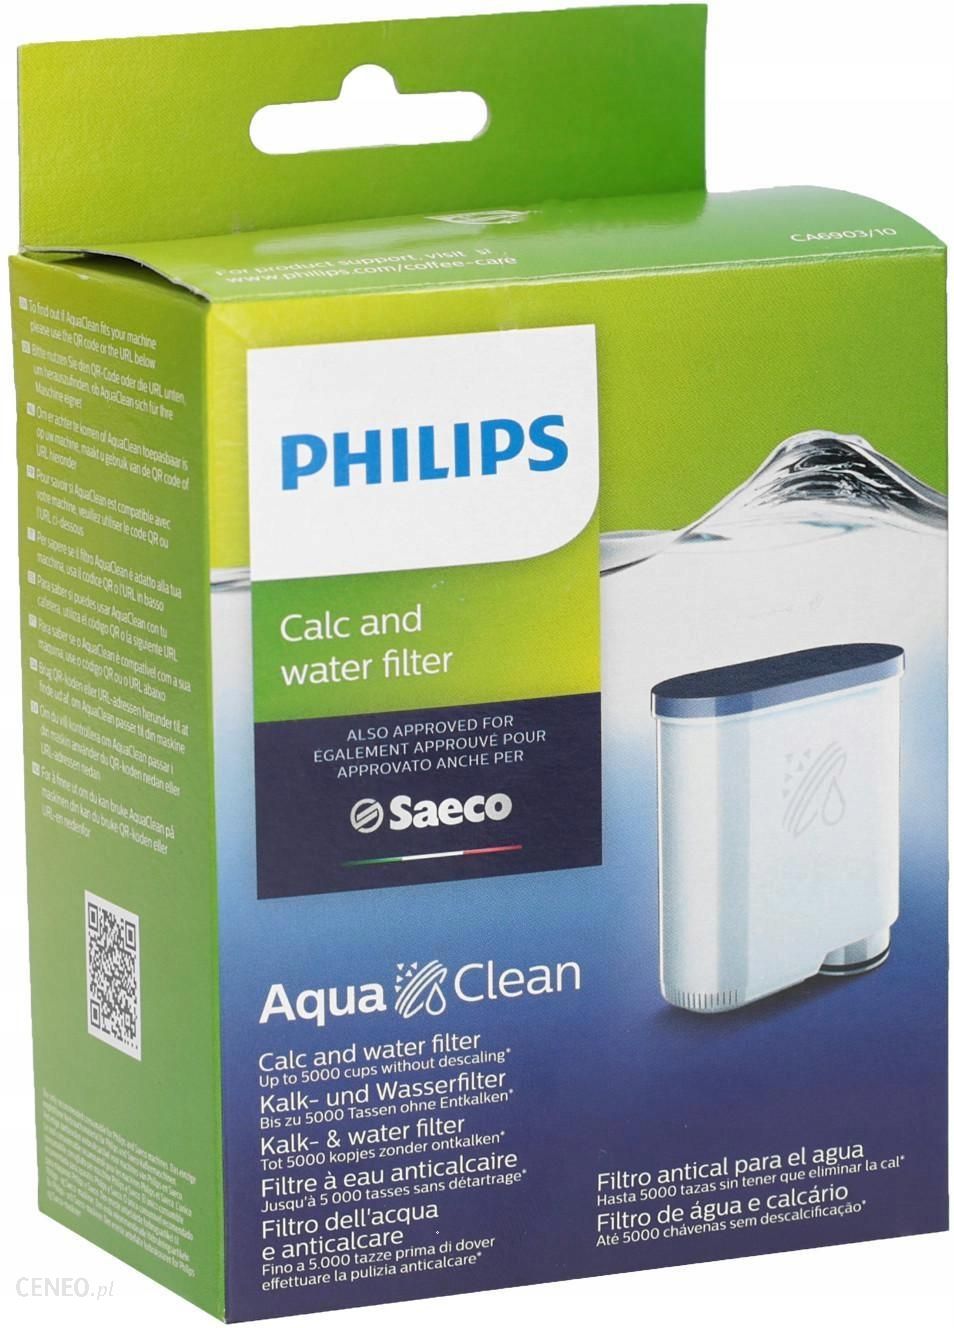 Фильтр для кофемашины Philips aa08. Фильтр для кофемашины Саеко supo60. Картридж для воды для кофемашин Филипс. Фильтр для воды Aqua clean 42194502045.1. Купить фильтр для кофемашины philips